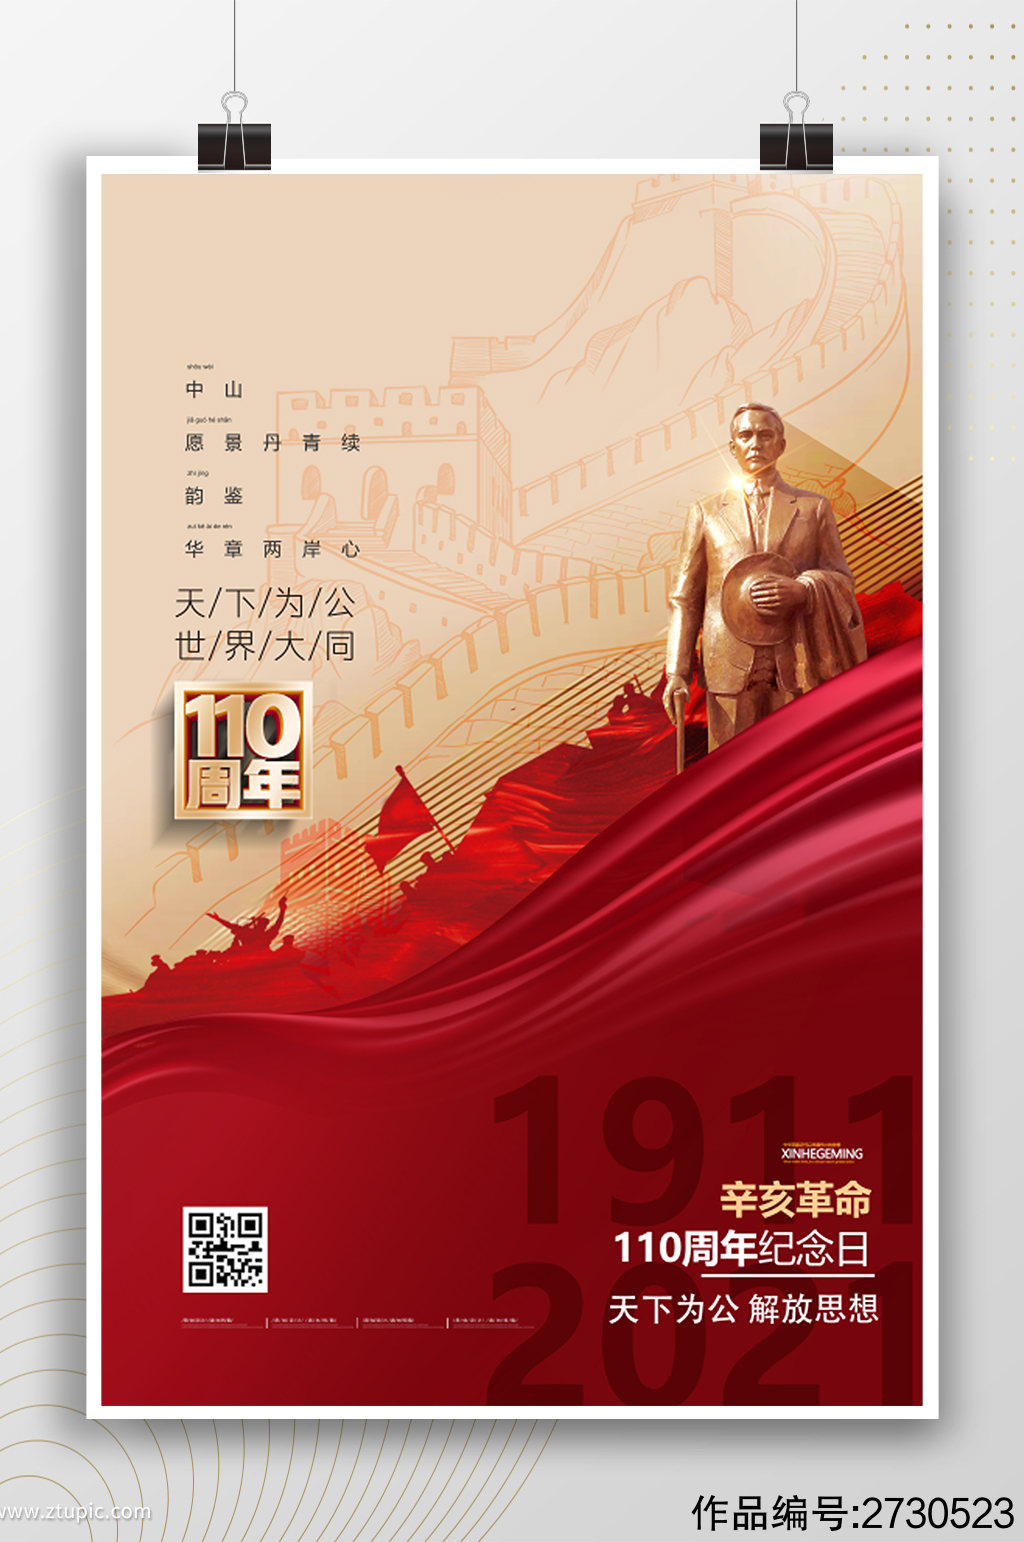 辛亥革命110周年纪念日宣传海报